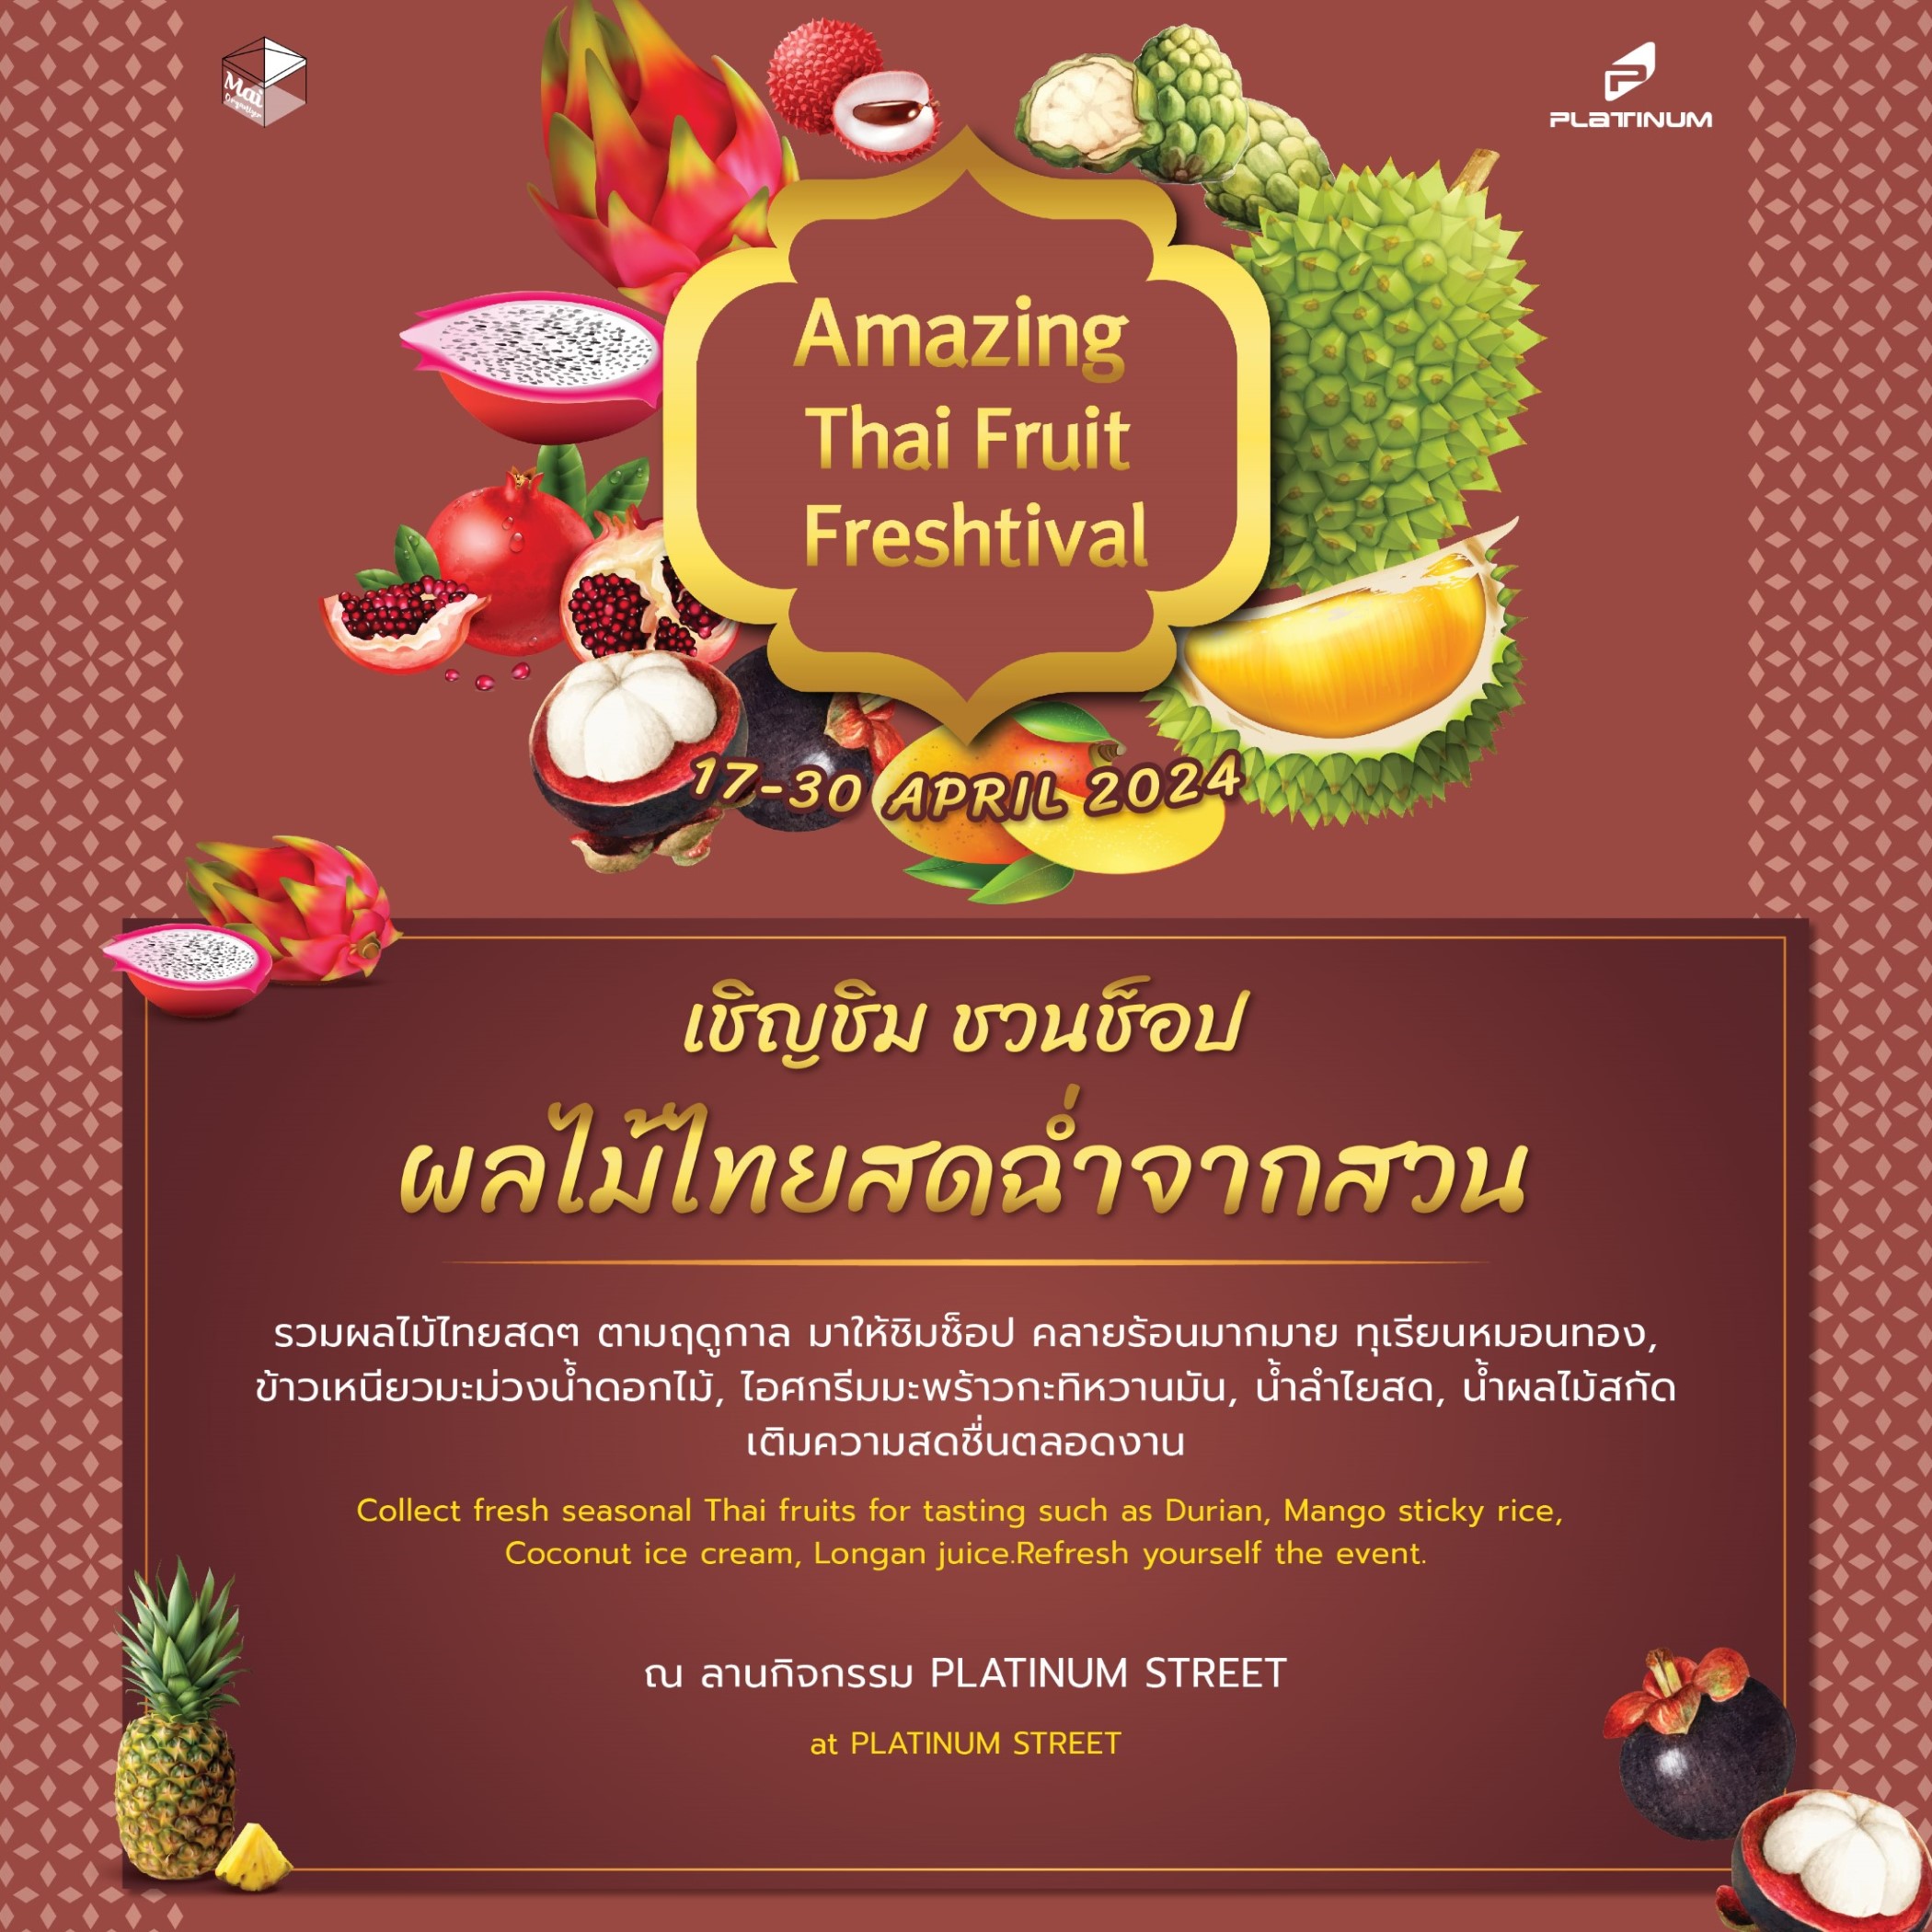 แพลทินัม เชิญช้อปชิมผลไม้ไทยสดฉ่ำในงาน “Amazing Thai Fruit Freshtival” 